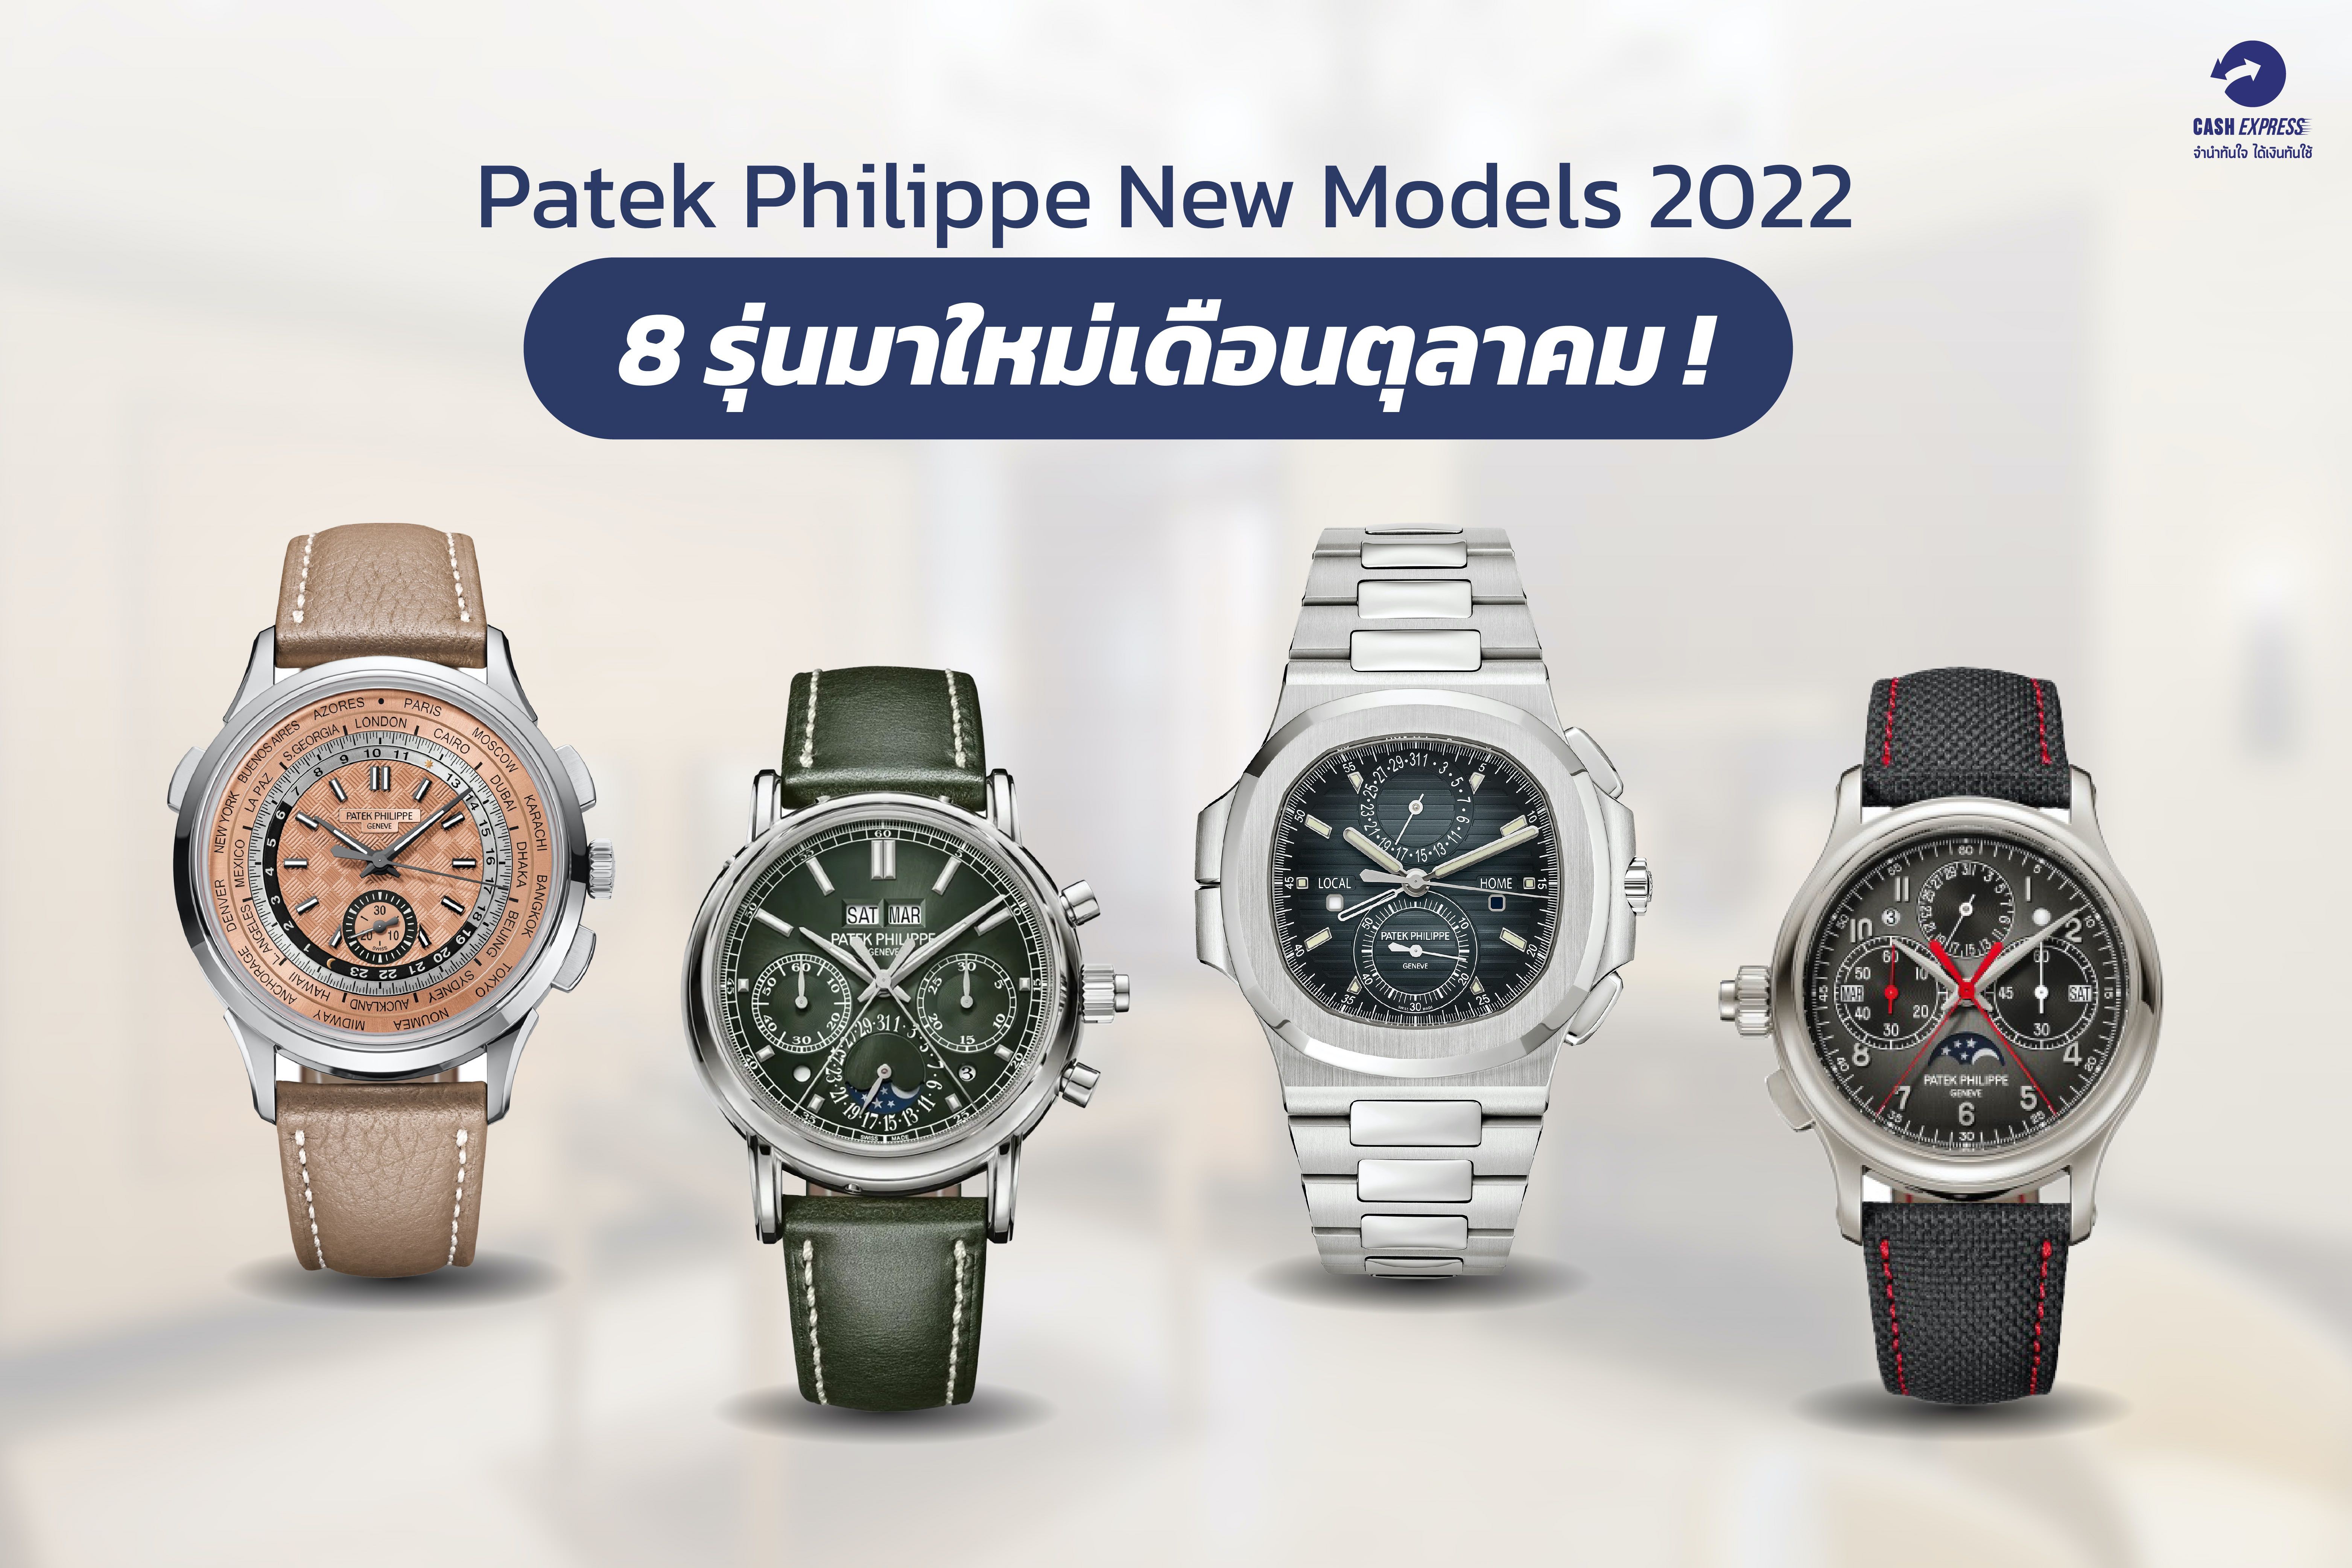 Patek Philippe New Models 2022 8 รุ่นมาใหม่เดือนตุลาคม